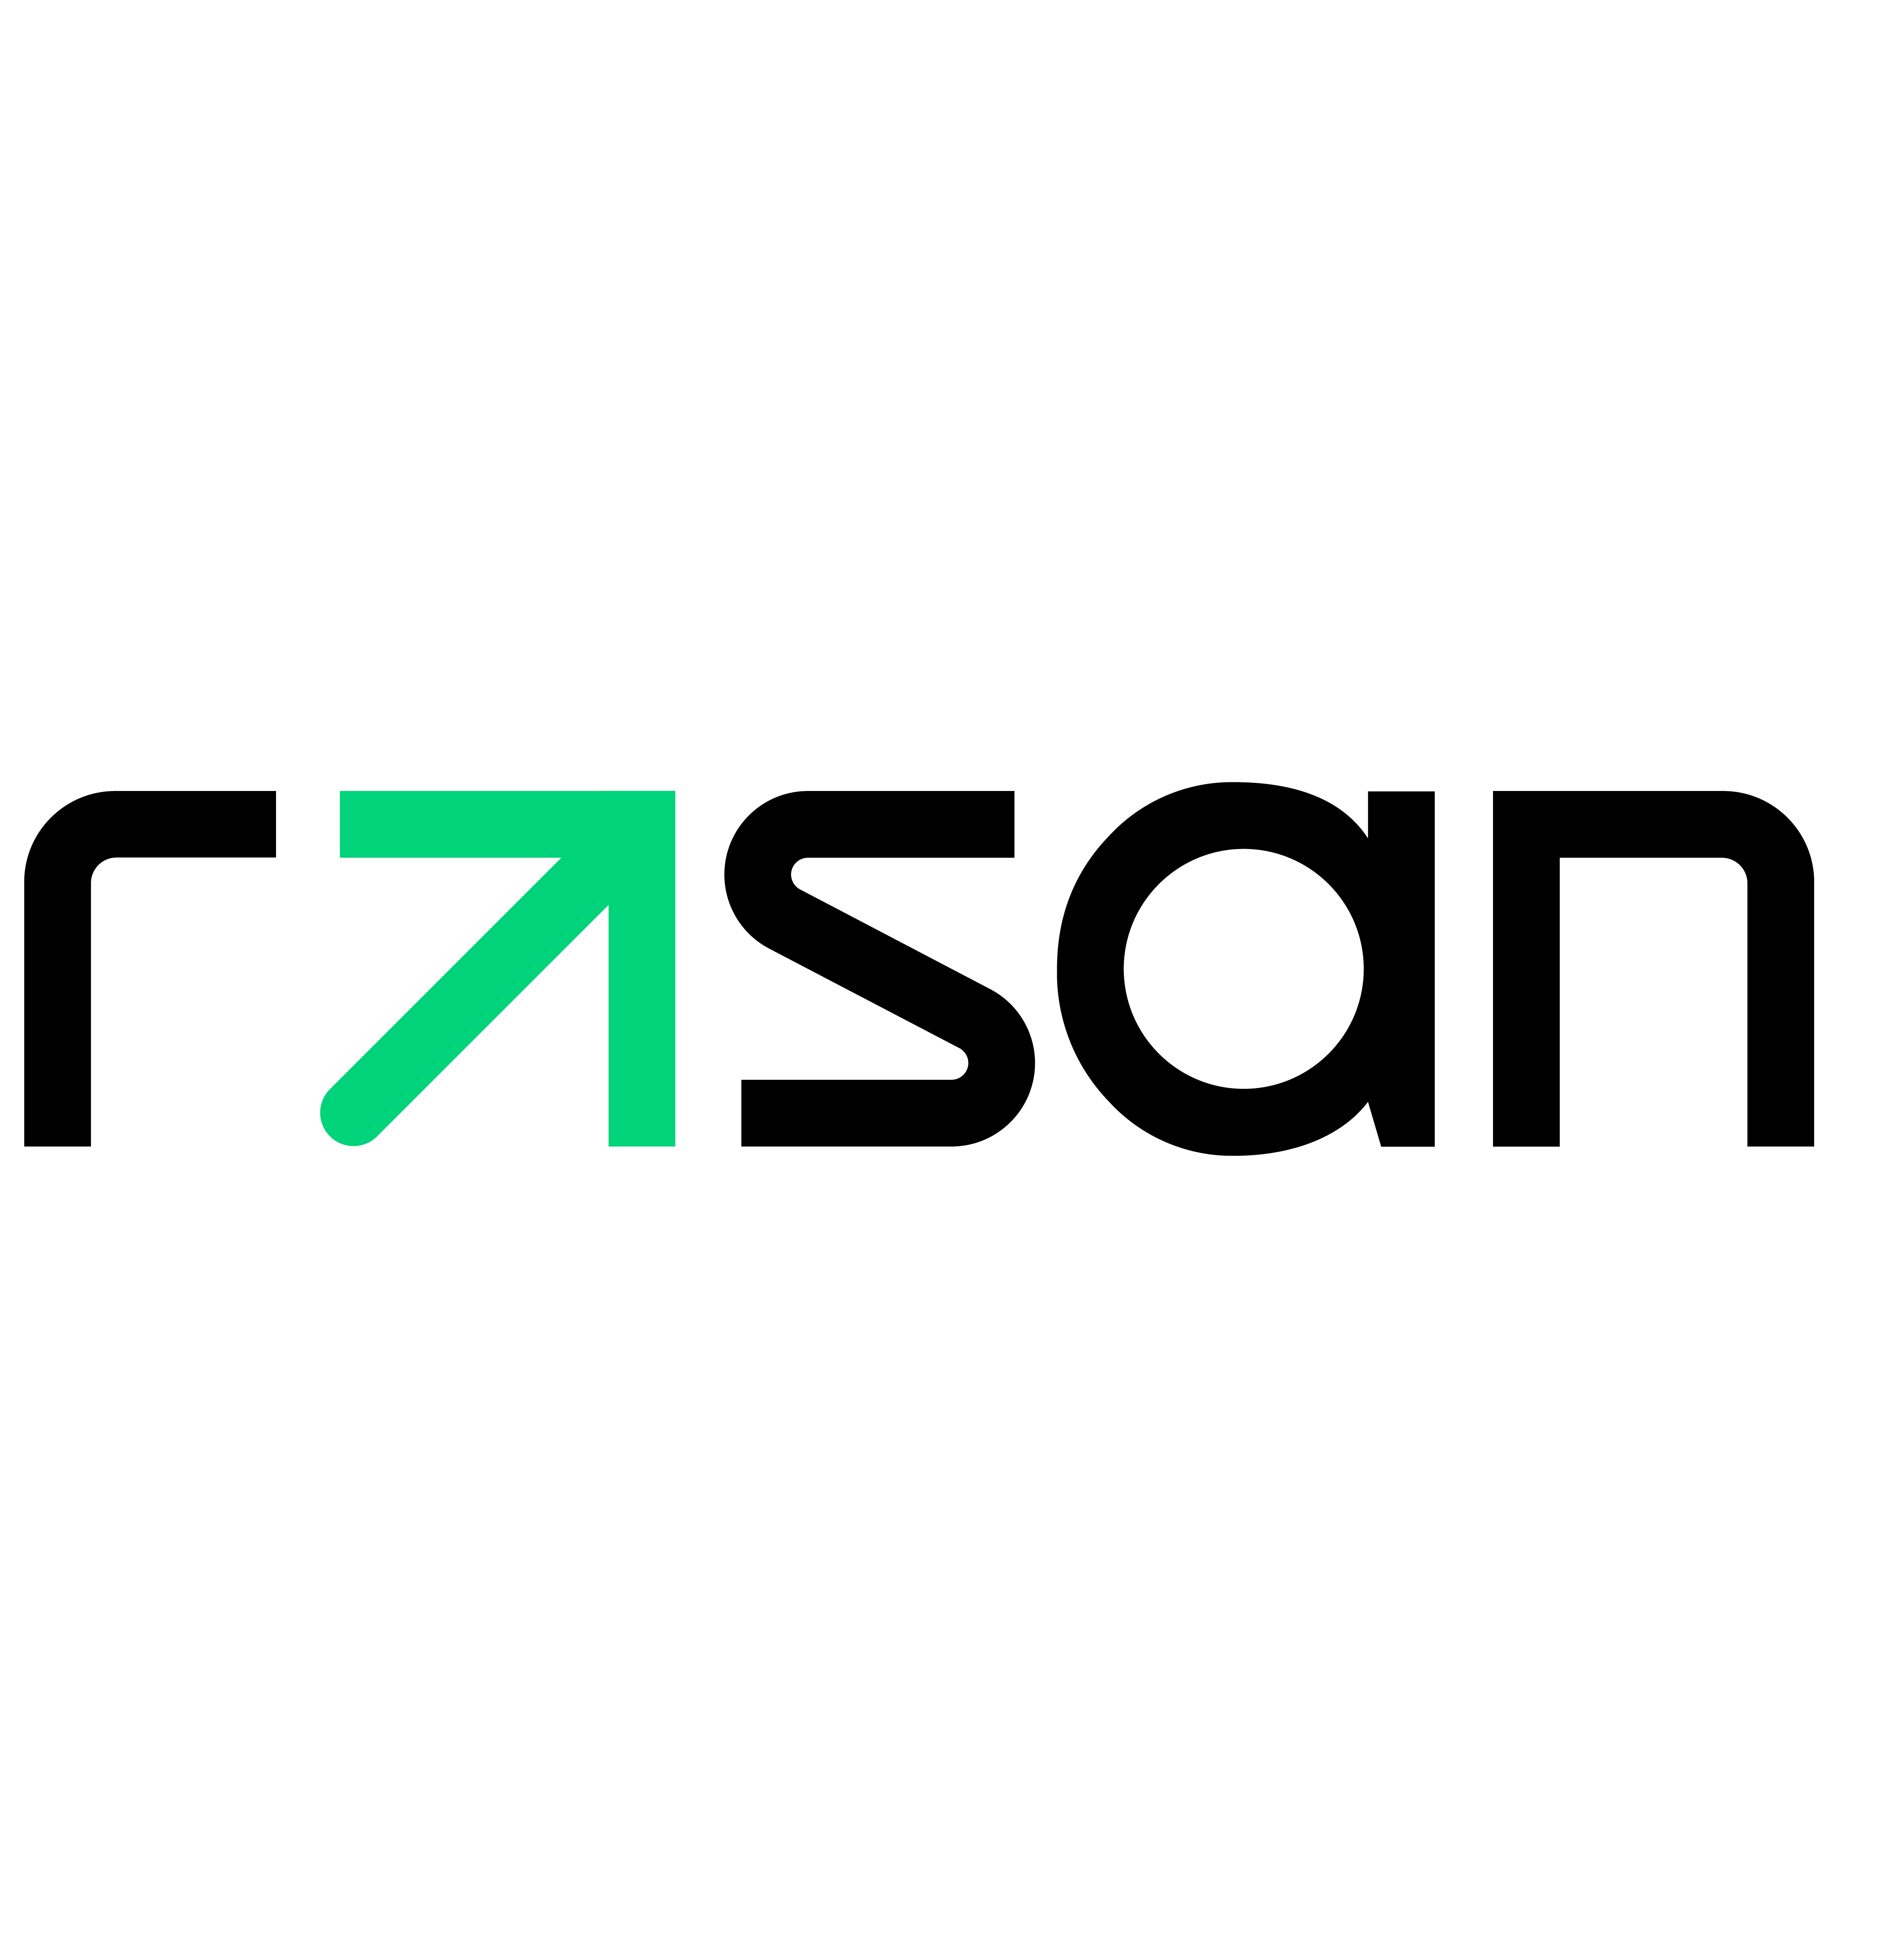 Rasan’s Actively